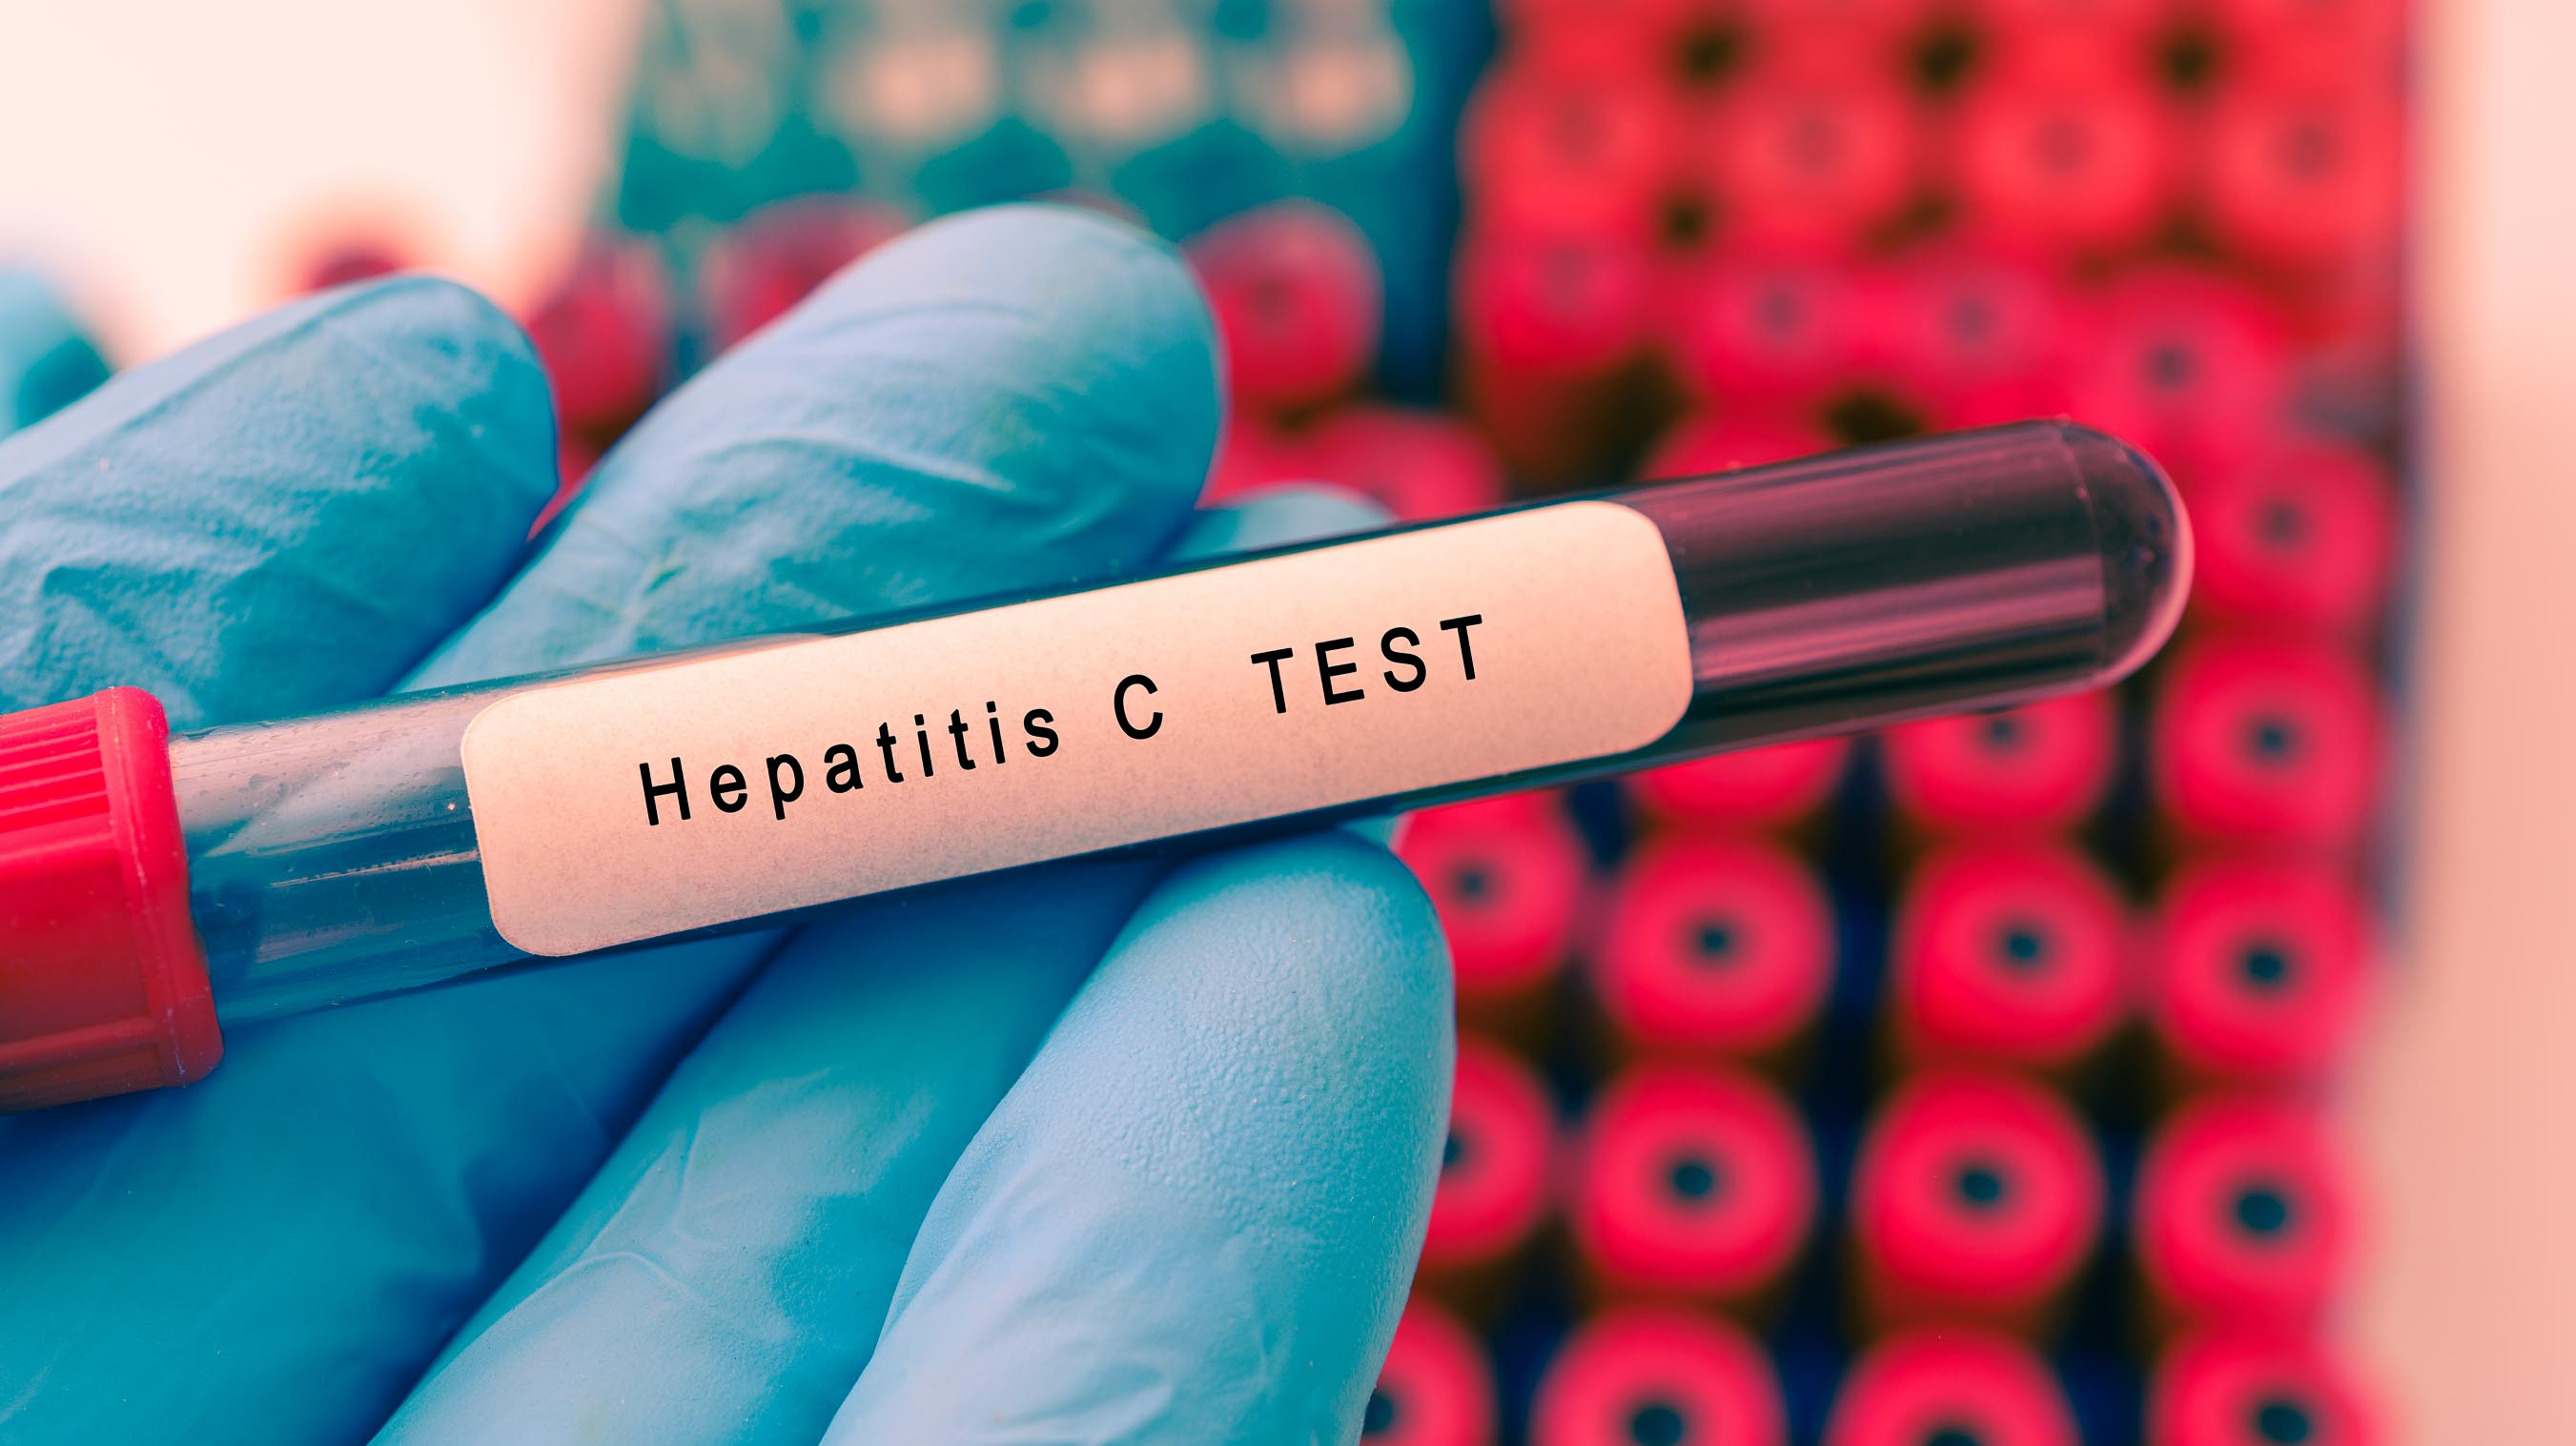 Sociedades Mdicas y AbbVie lanzan el Declogo para avanzar en la eliminacin de la hepatitis C